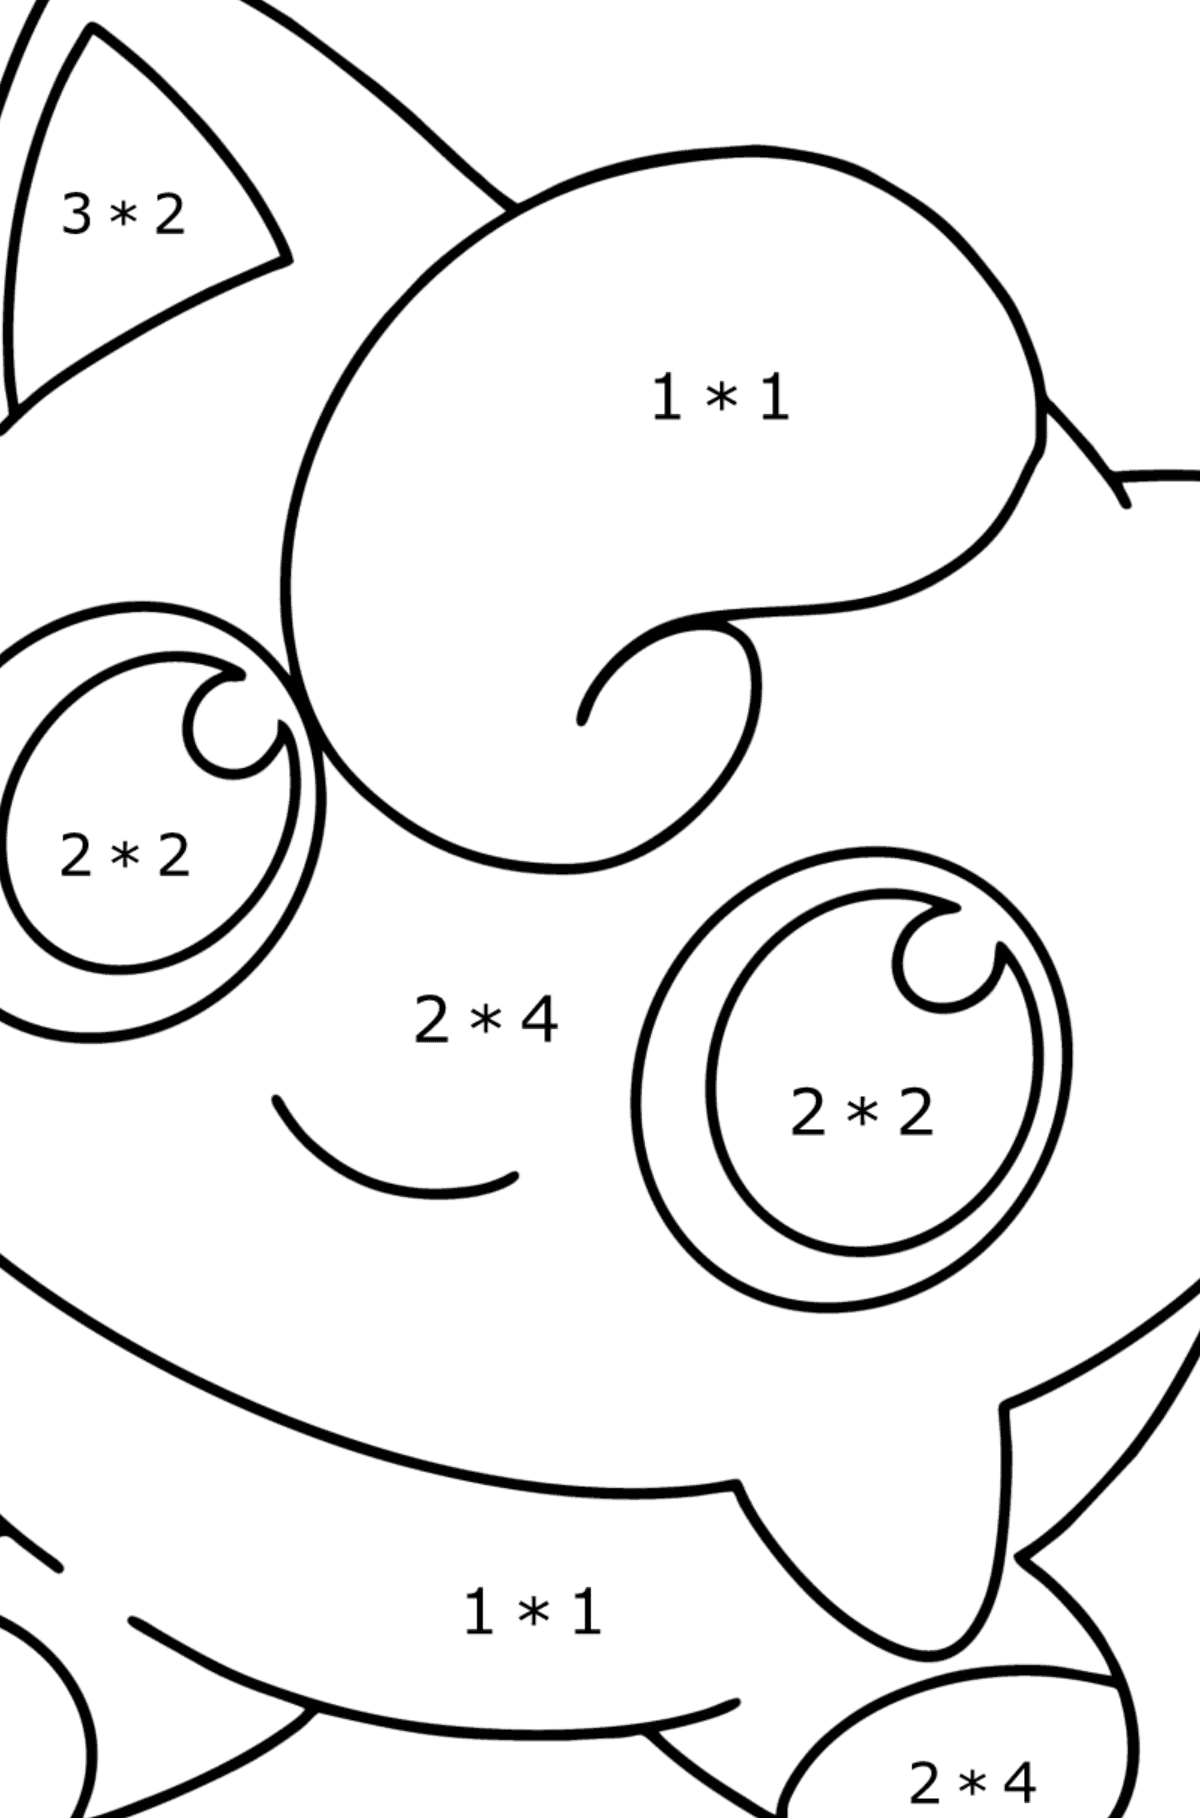 Desenho de Pokémon Go Jigglypuff para colorir - Colorindo com Matemática - Multiplicação para Crianças